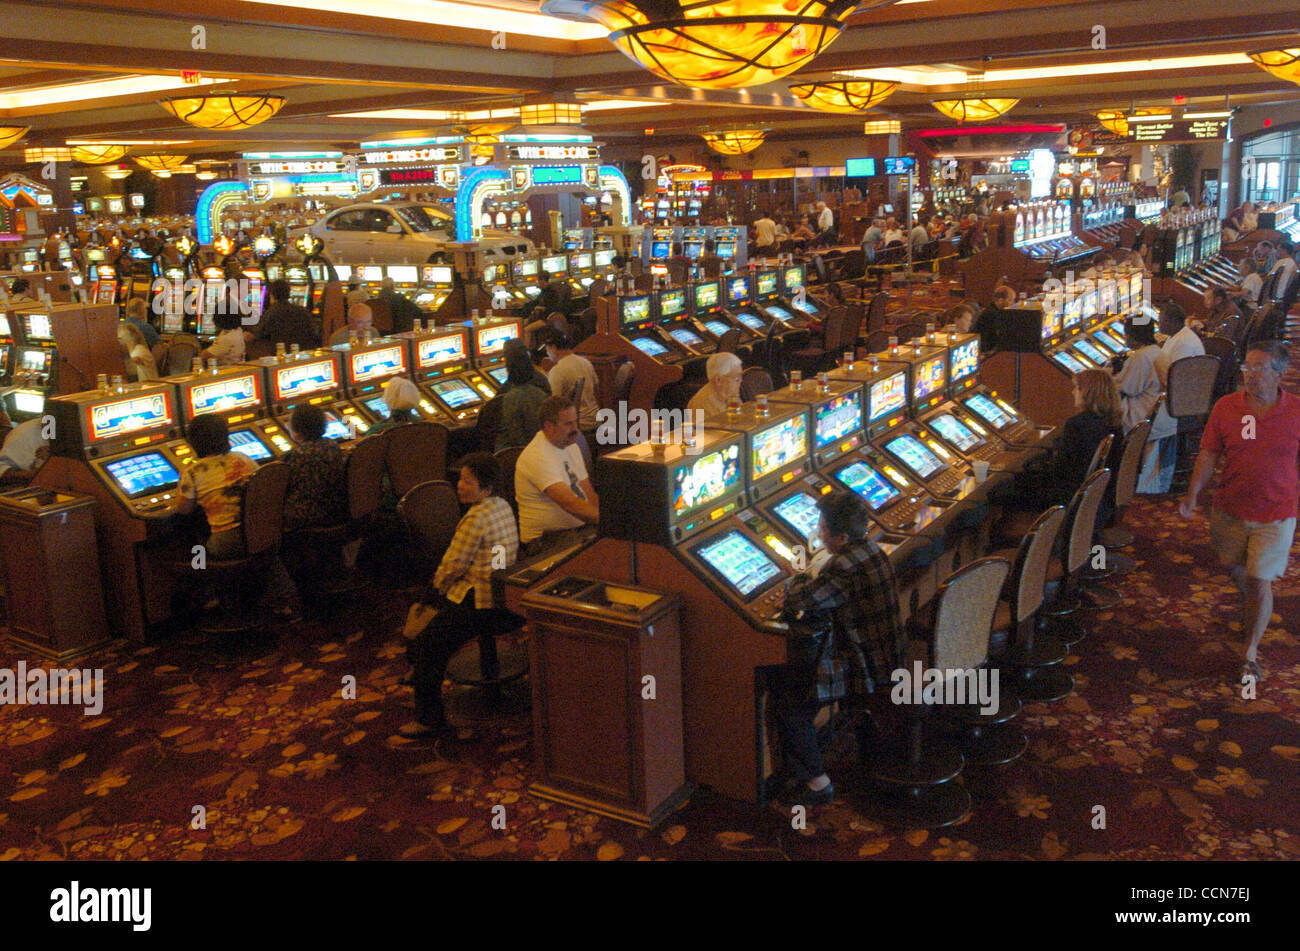 Photo of Cache Creek Casino Resort, Brooks, CA